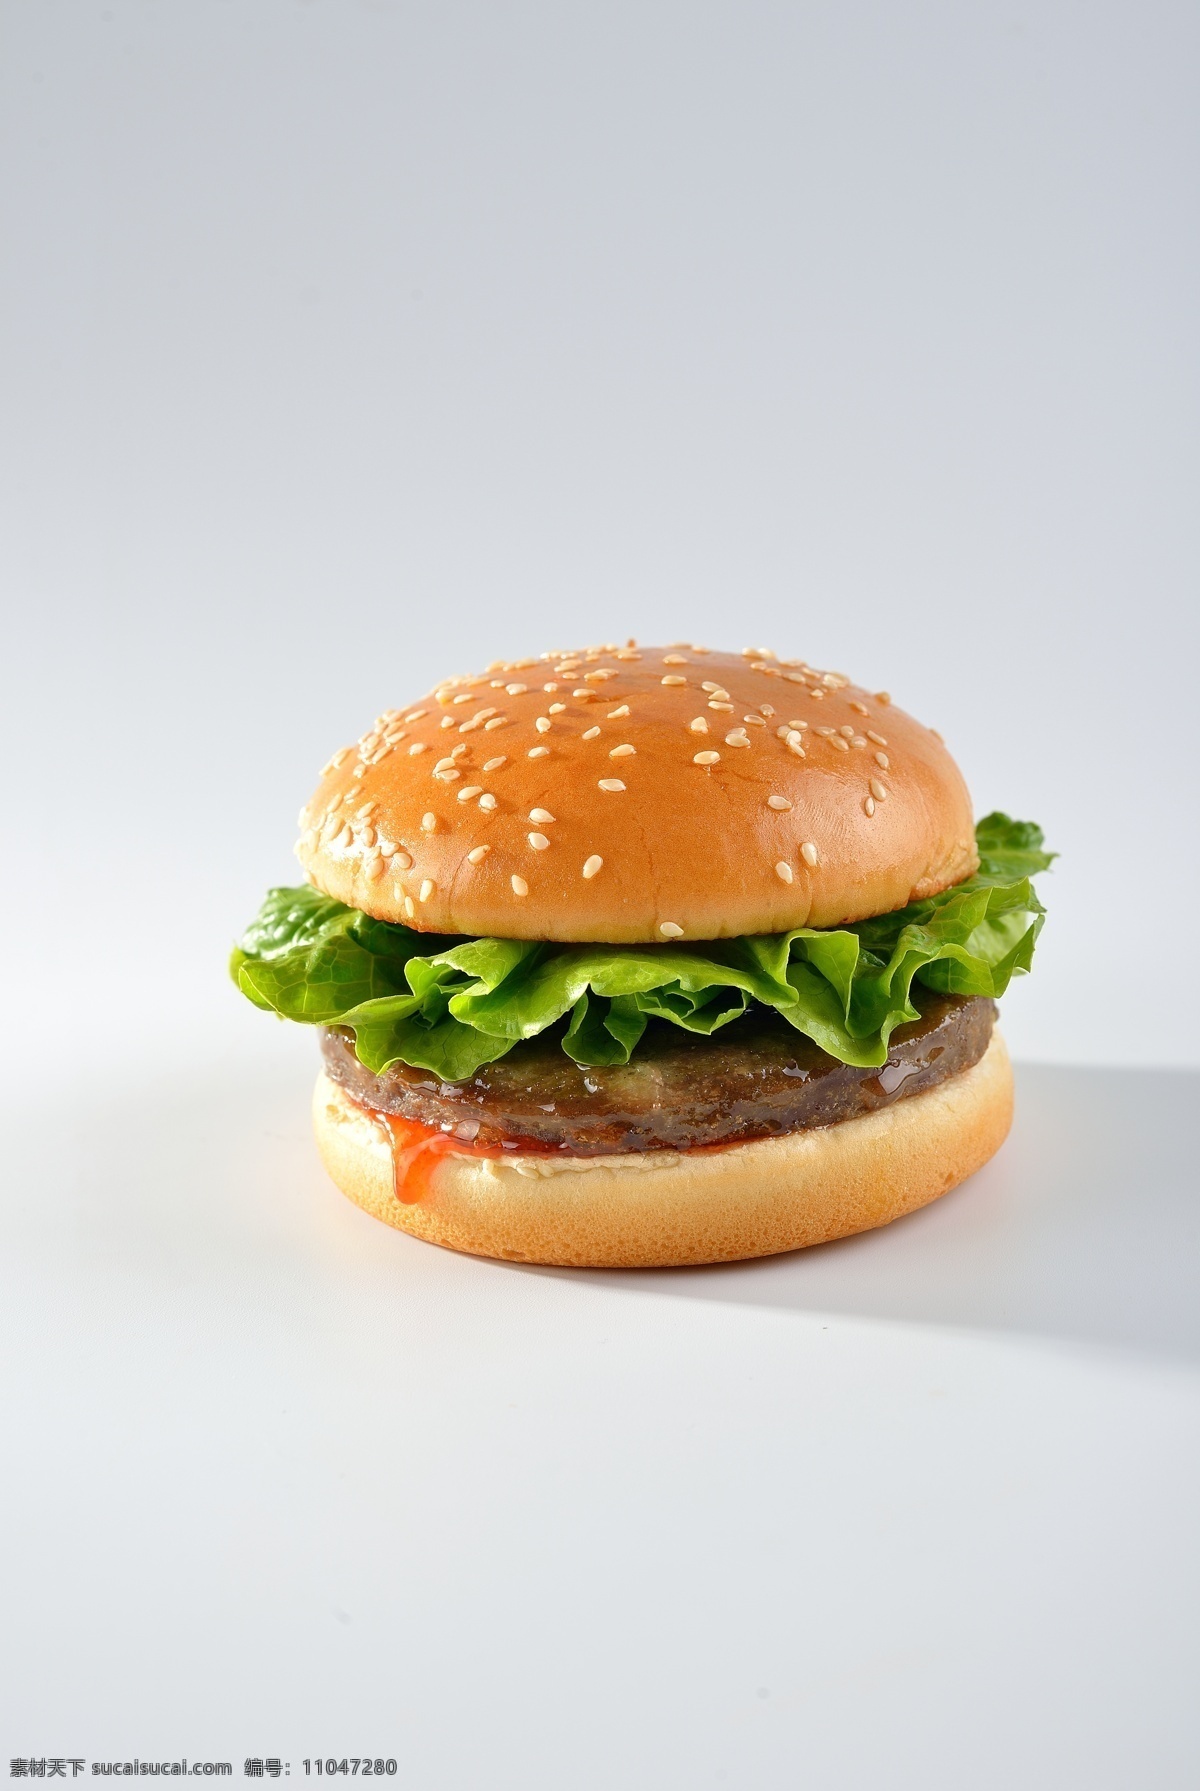 美式牛肉汉堡 汉堡 牛肉 三明治 汉堡包 西餐 卡路里 美式 小吃 面包 生菜 番茄酱 牛肉堡 餐饮美食 西餐美食